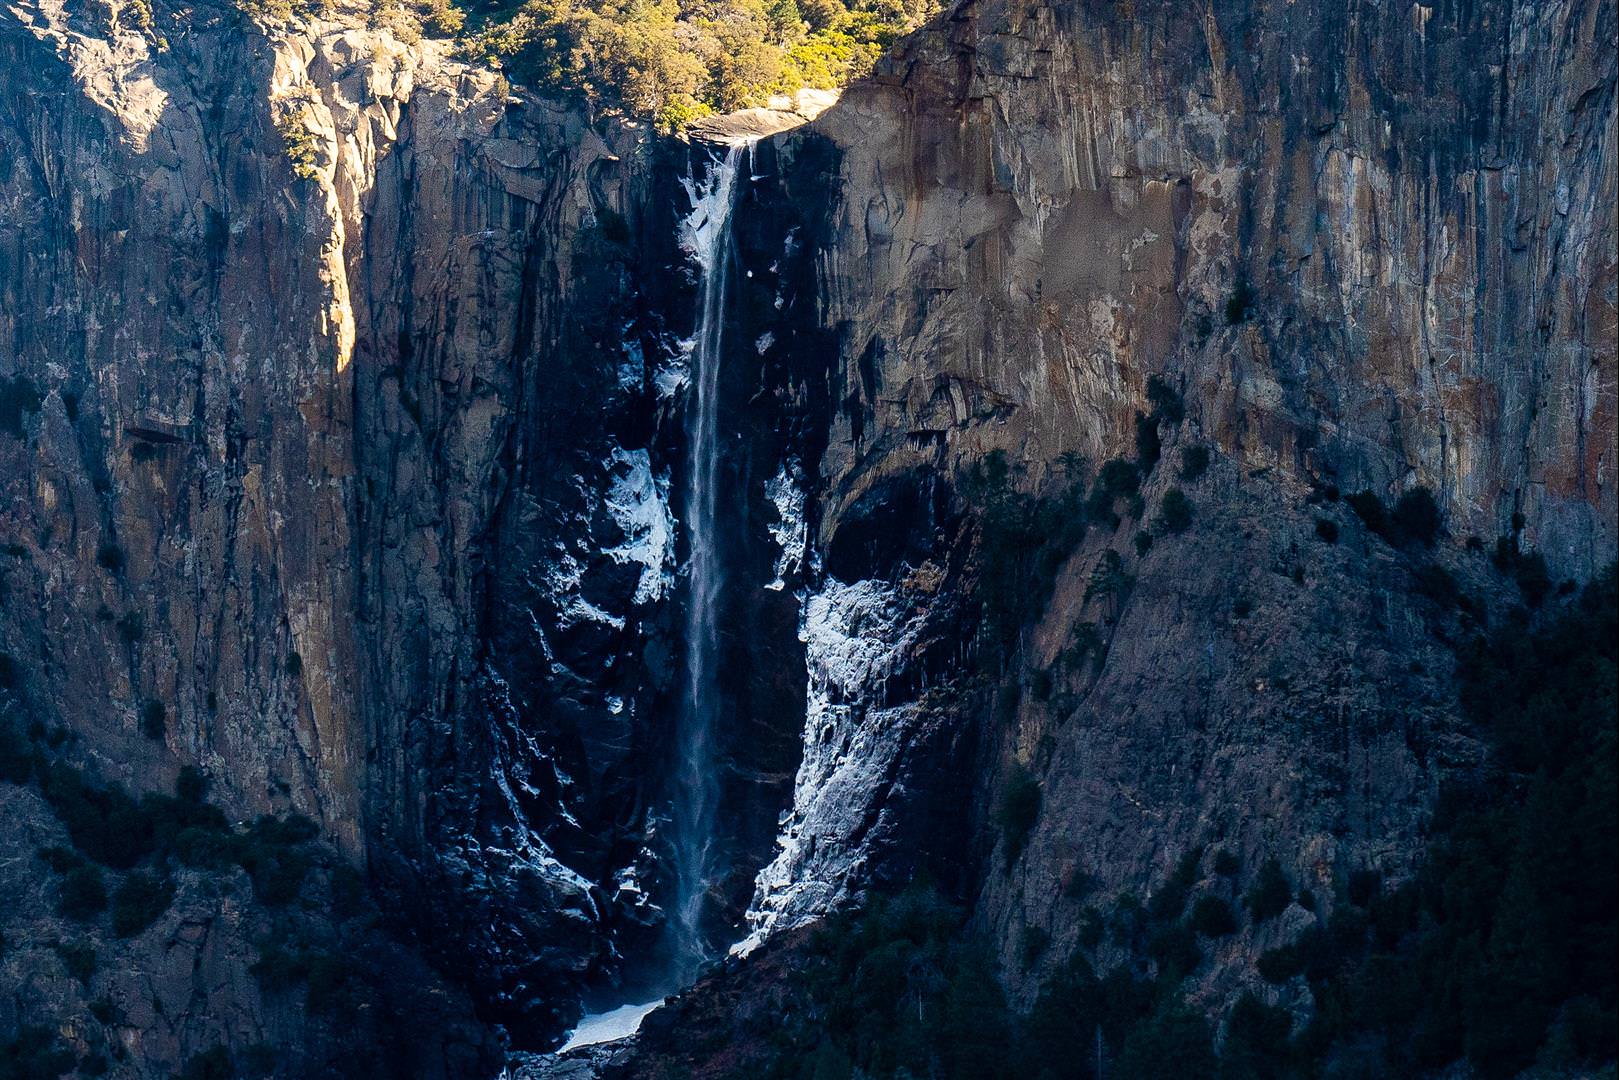 [旅行團行程] 雄獅美西雙樂園 Day07 - 優勝美地國家公園 Yosemite National Park